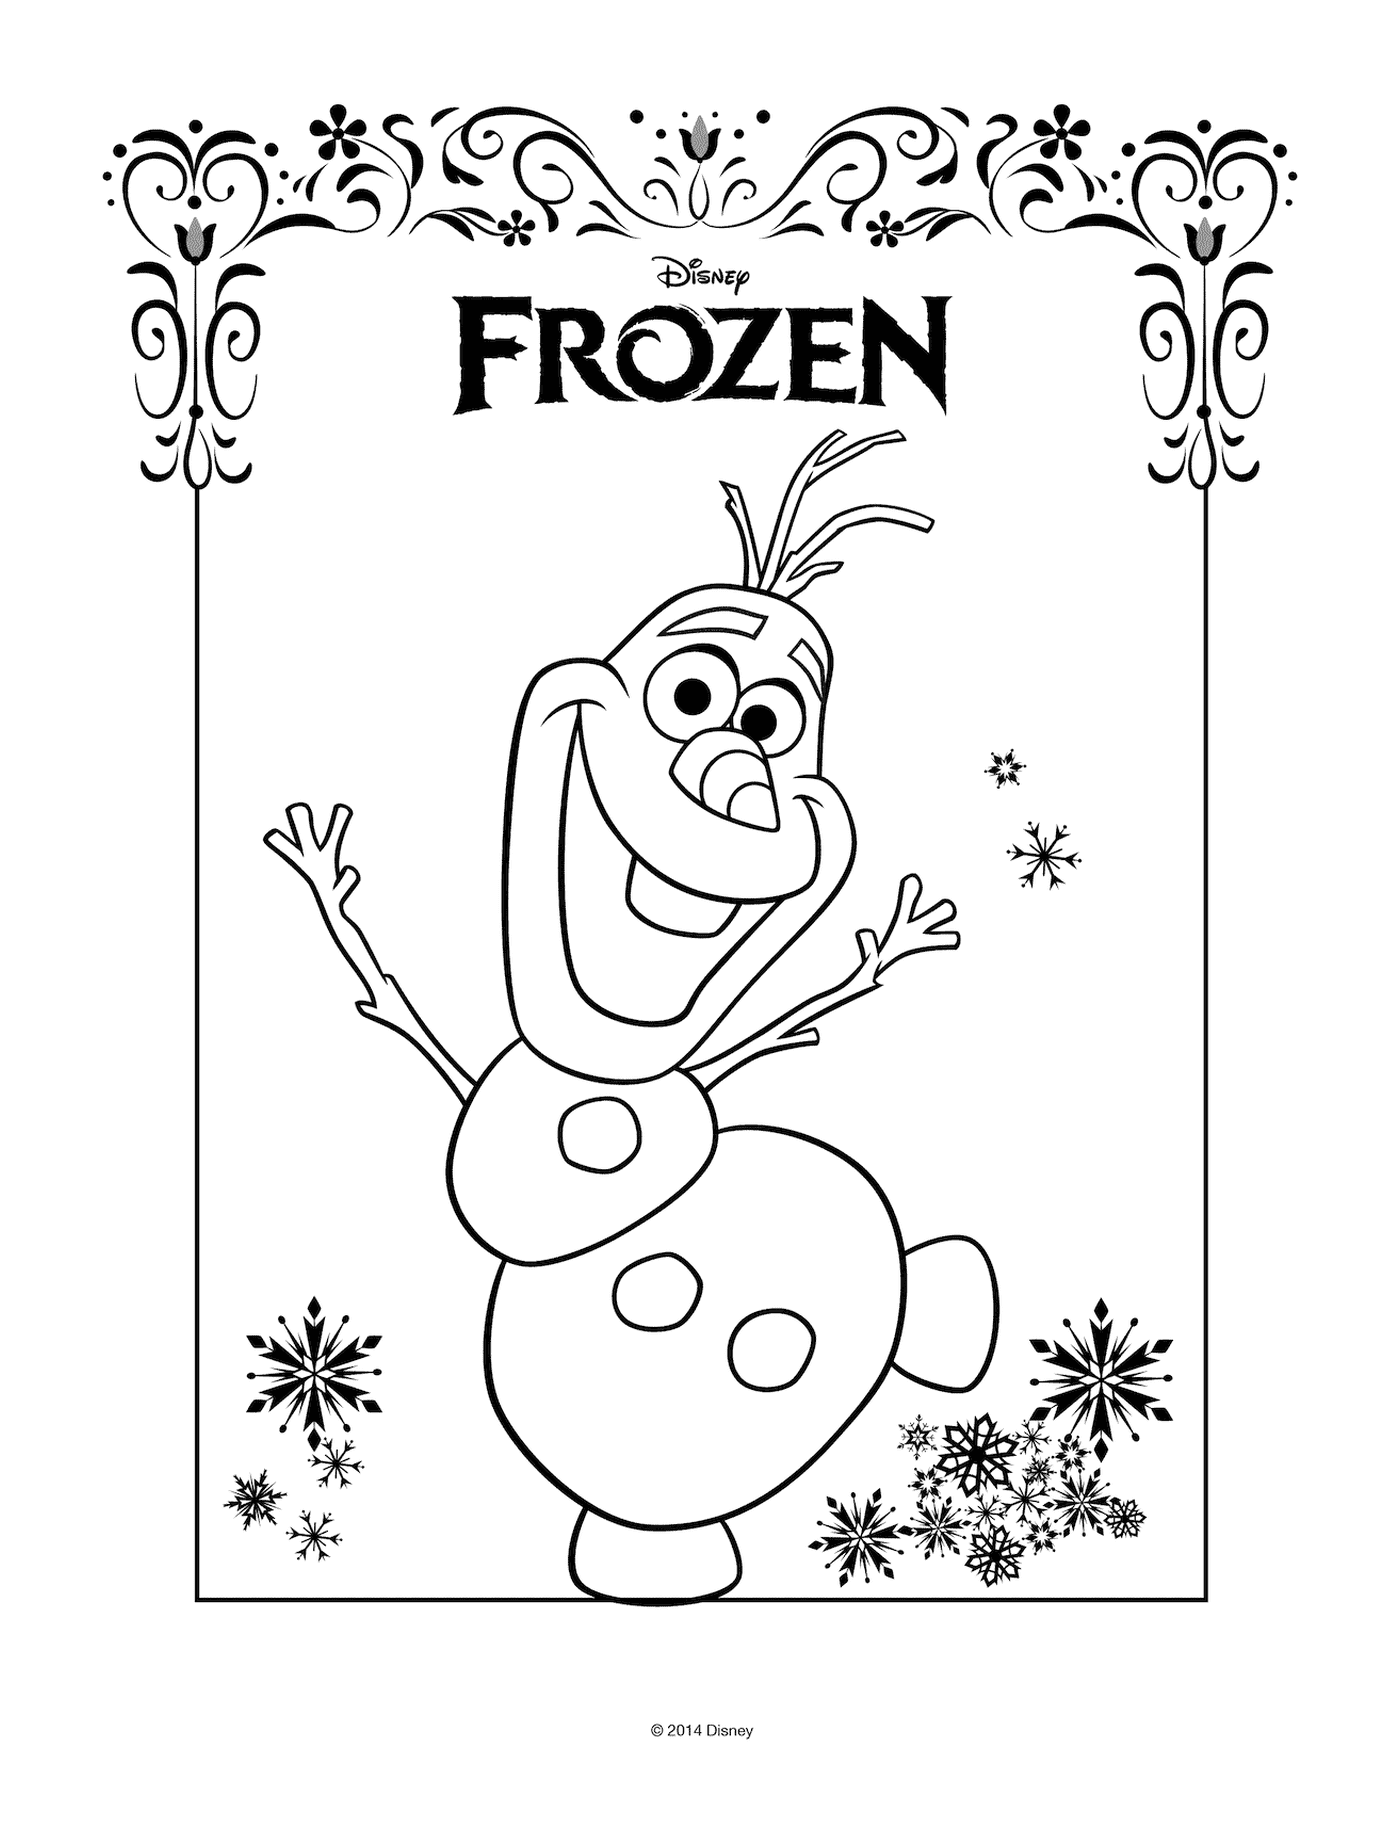  Olaf con logotipo de Disney's Frozen 